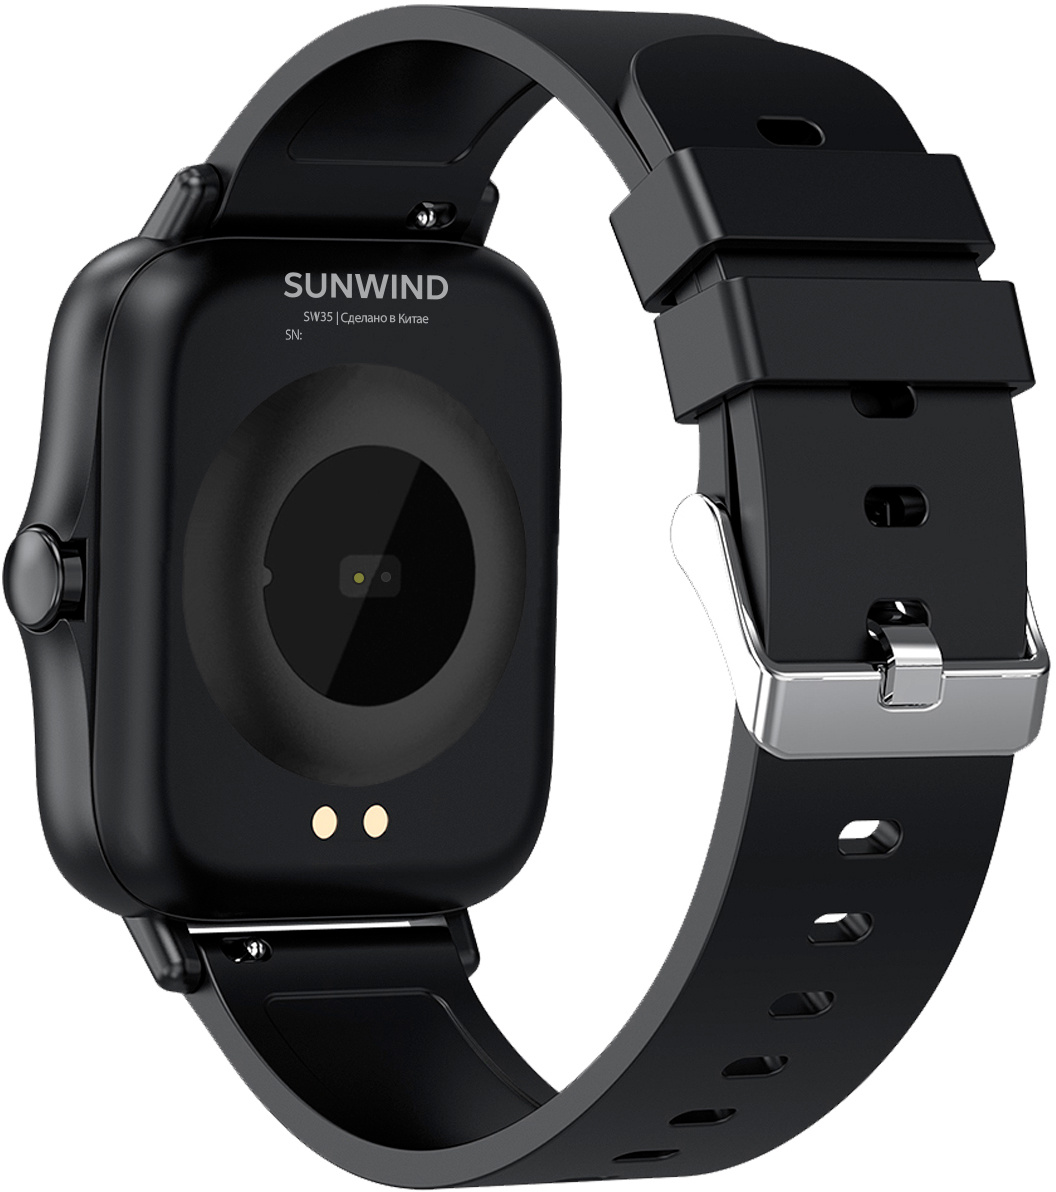 Смарт-часы SunWind SW35, черный 